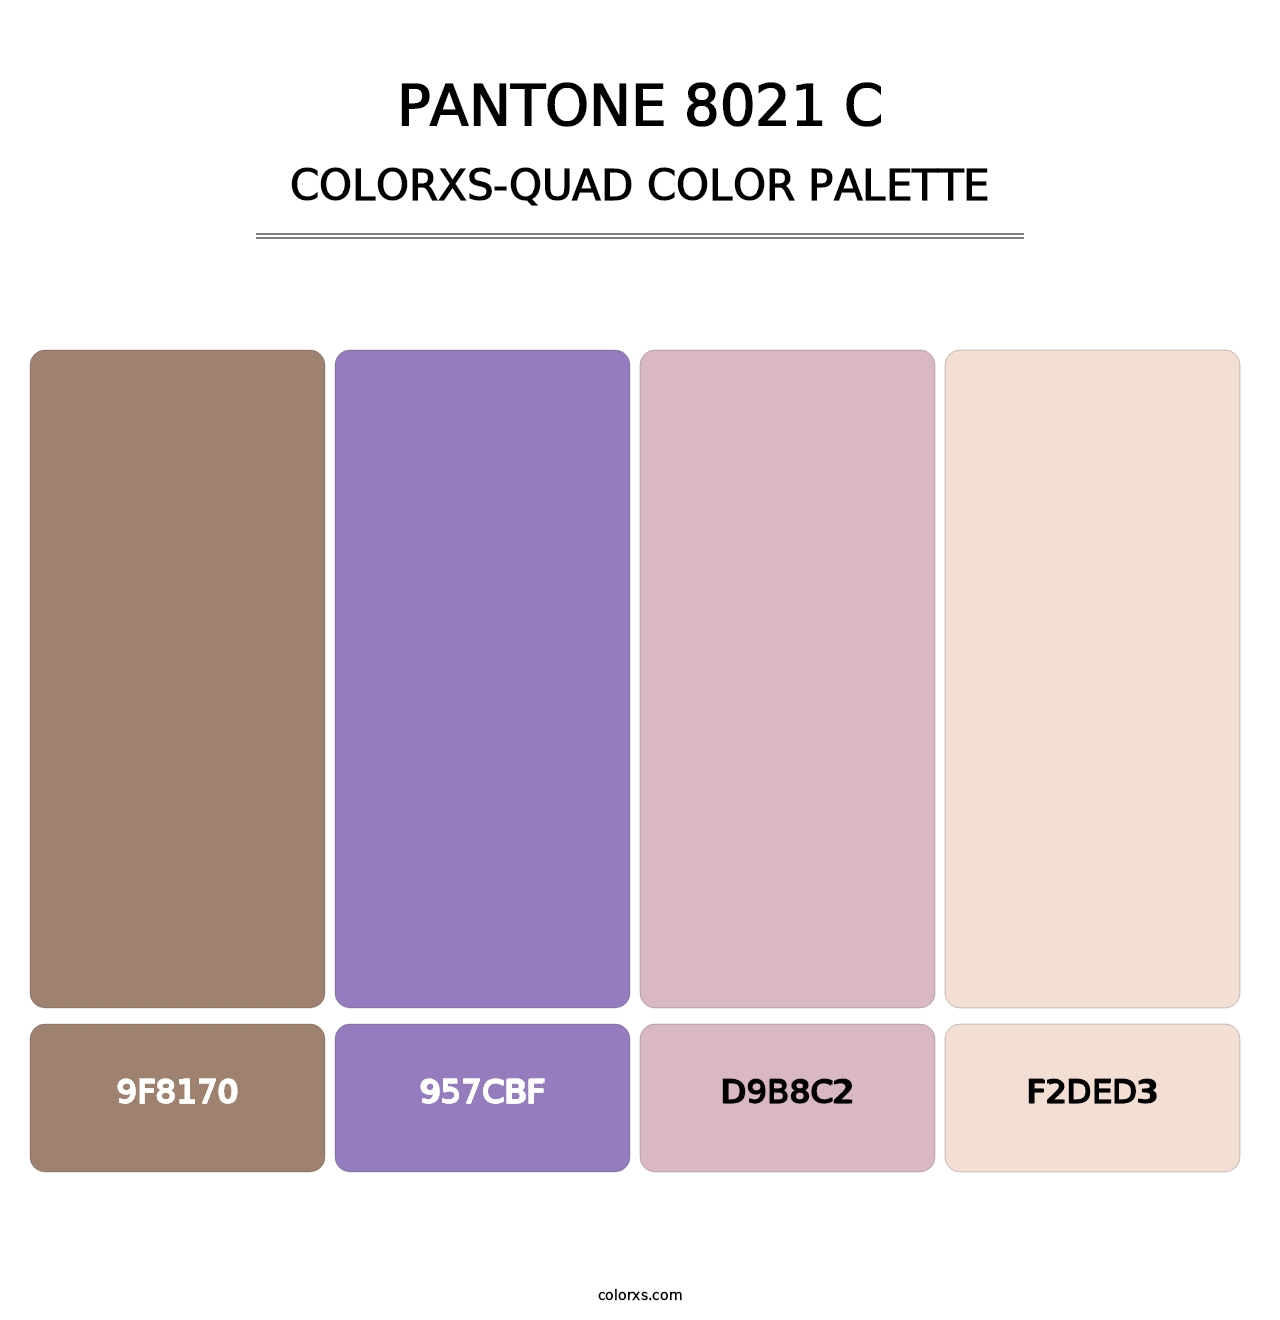 PANTONE 8021 C - Colorxs Quad Palette